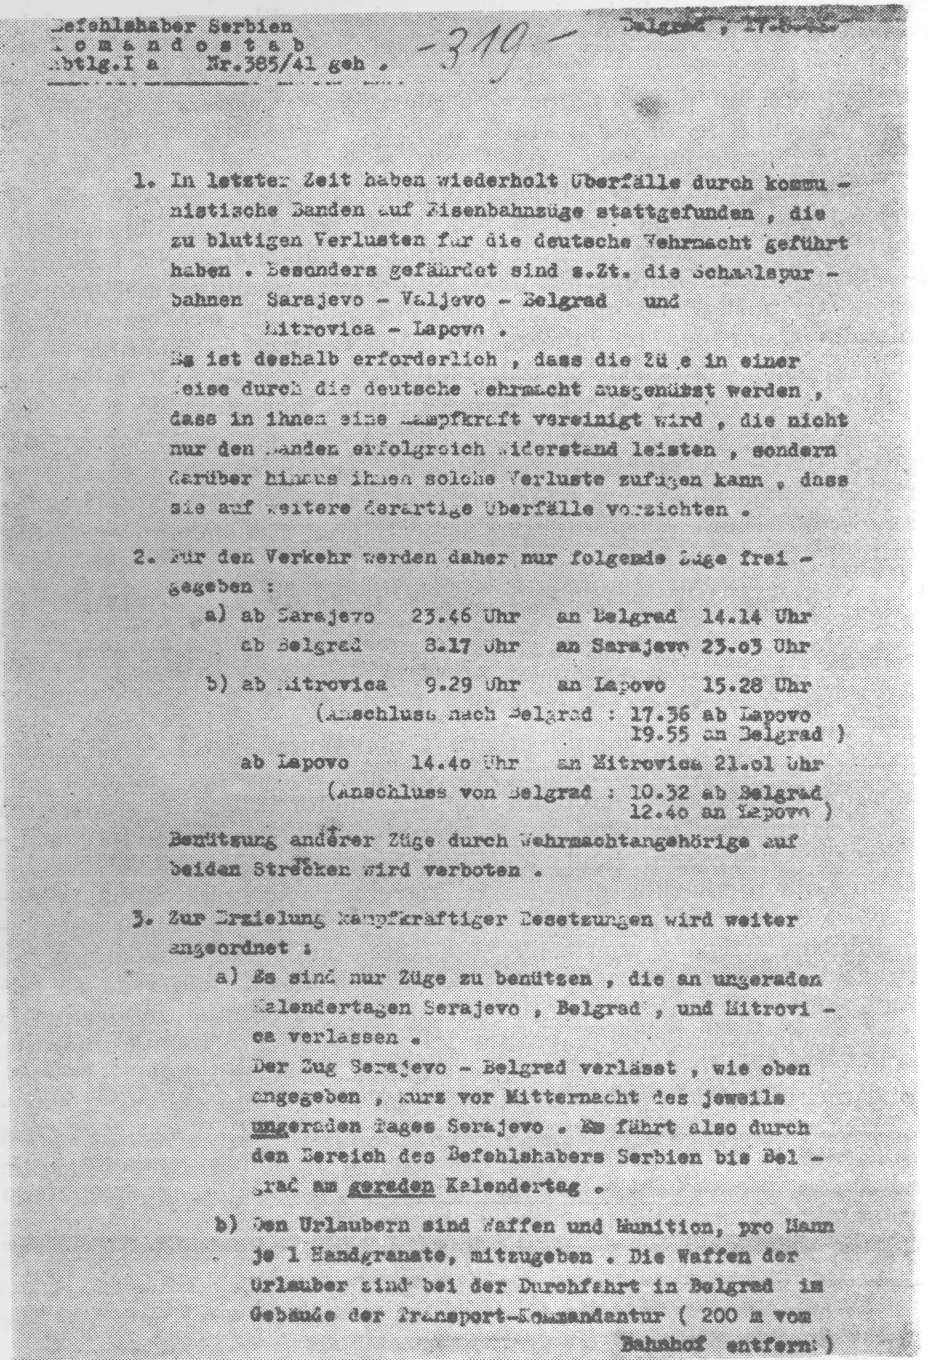 Prva strana naređenja njemačkog opunomoćenog komandanta u Srbiji od 17. avgusta 1941.